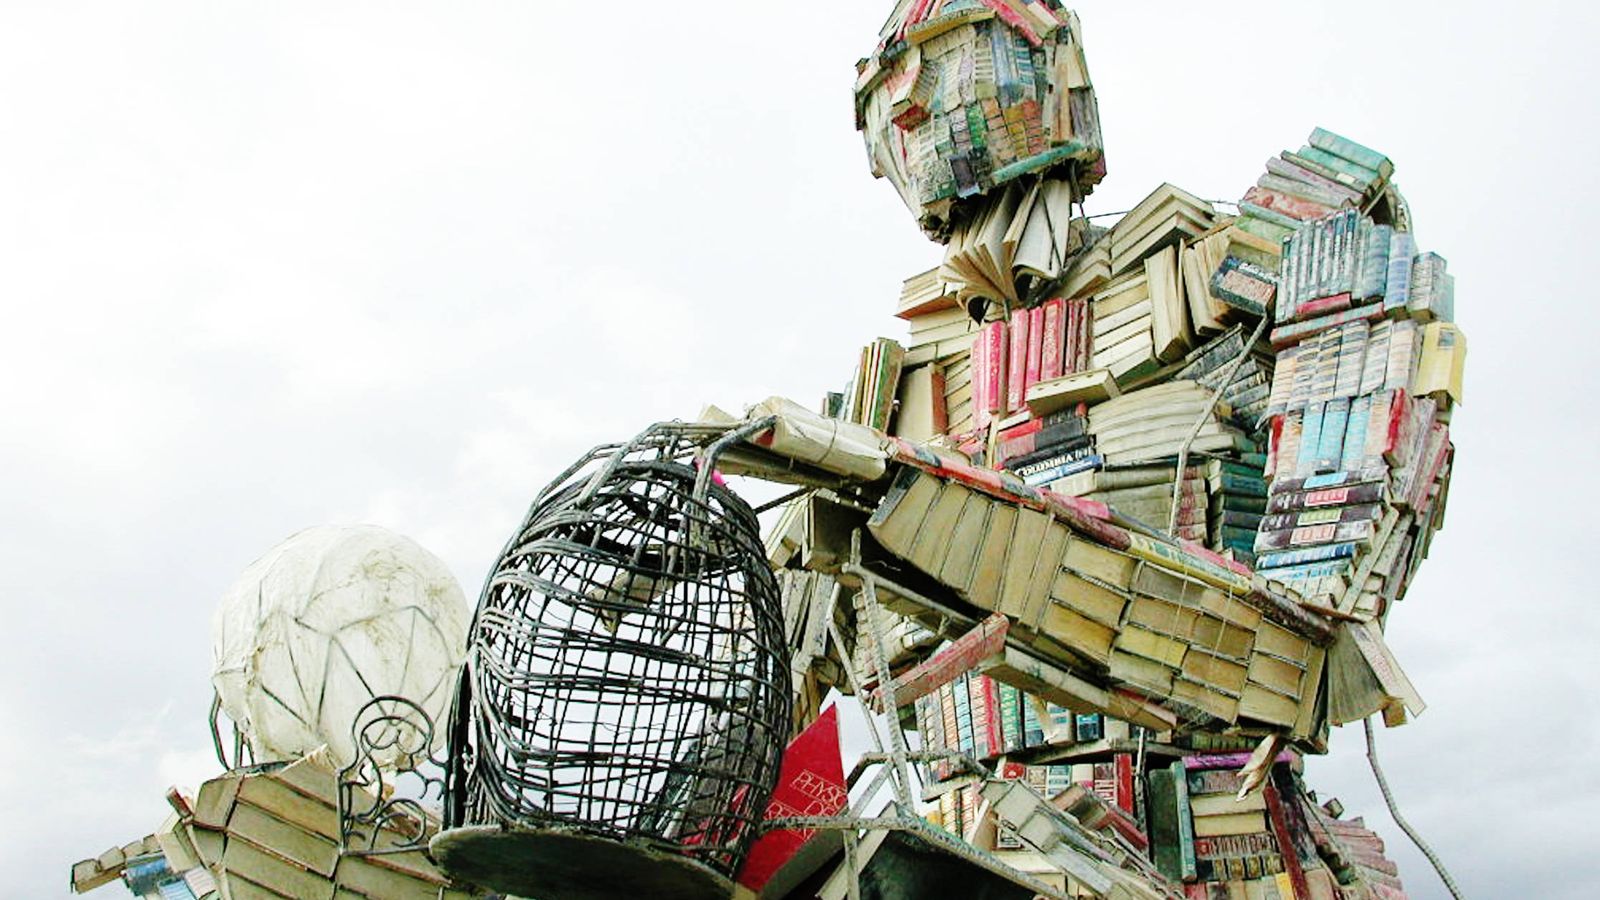 Foto: 'Body of Knowledge', una espectacular escultura de Dana Albany levantada con montones de libros.